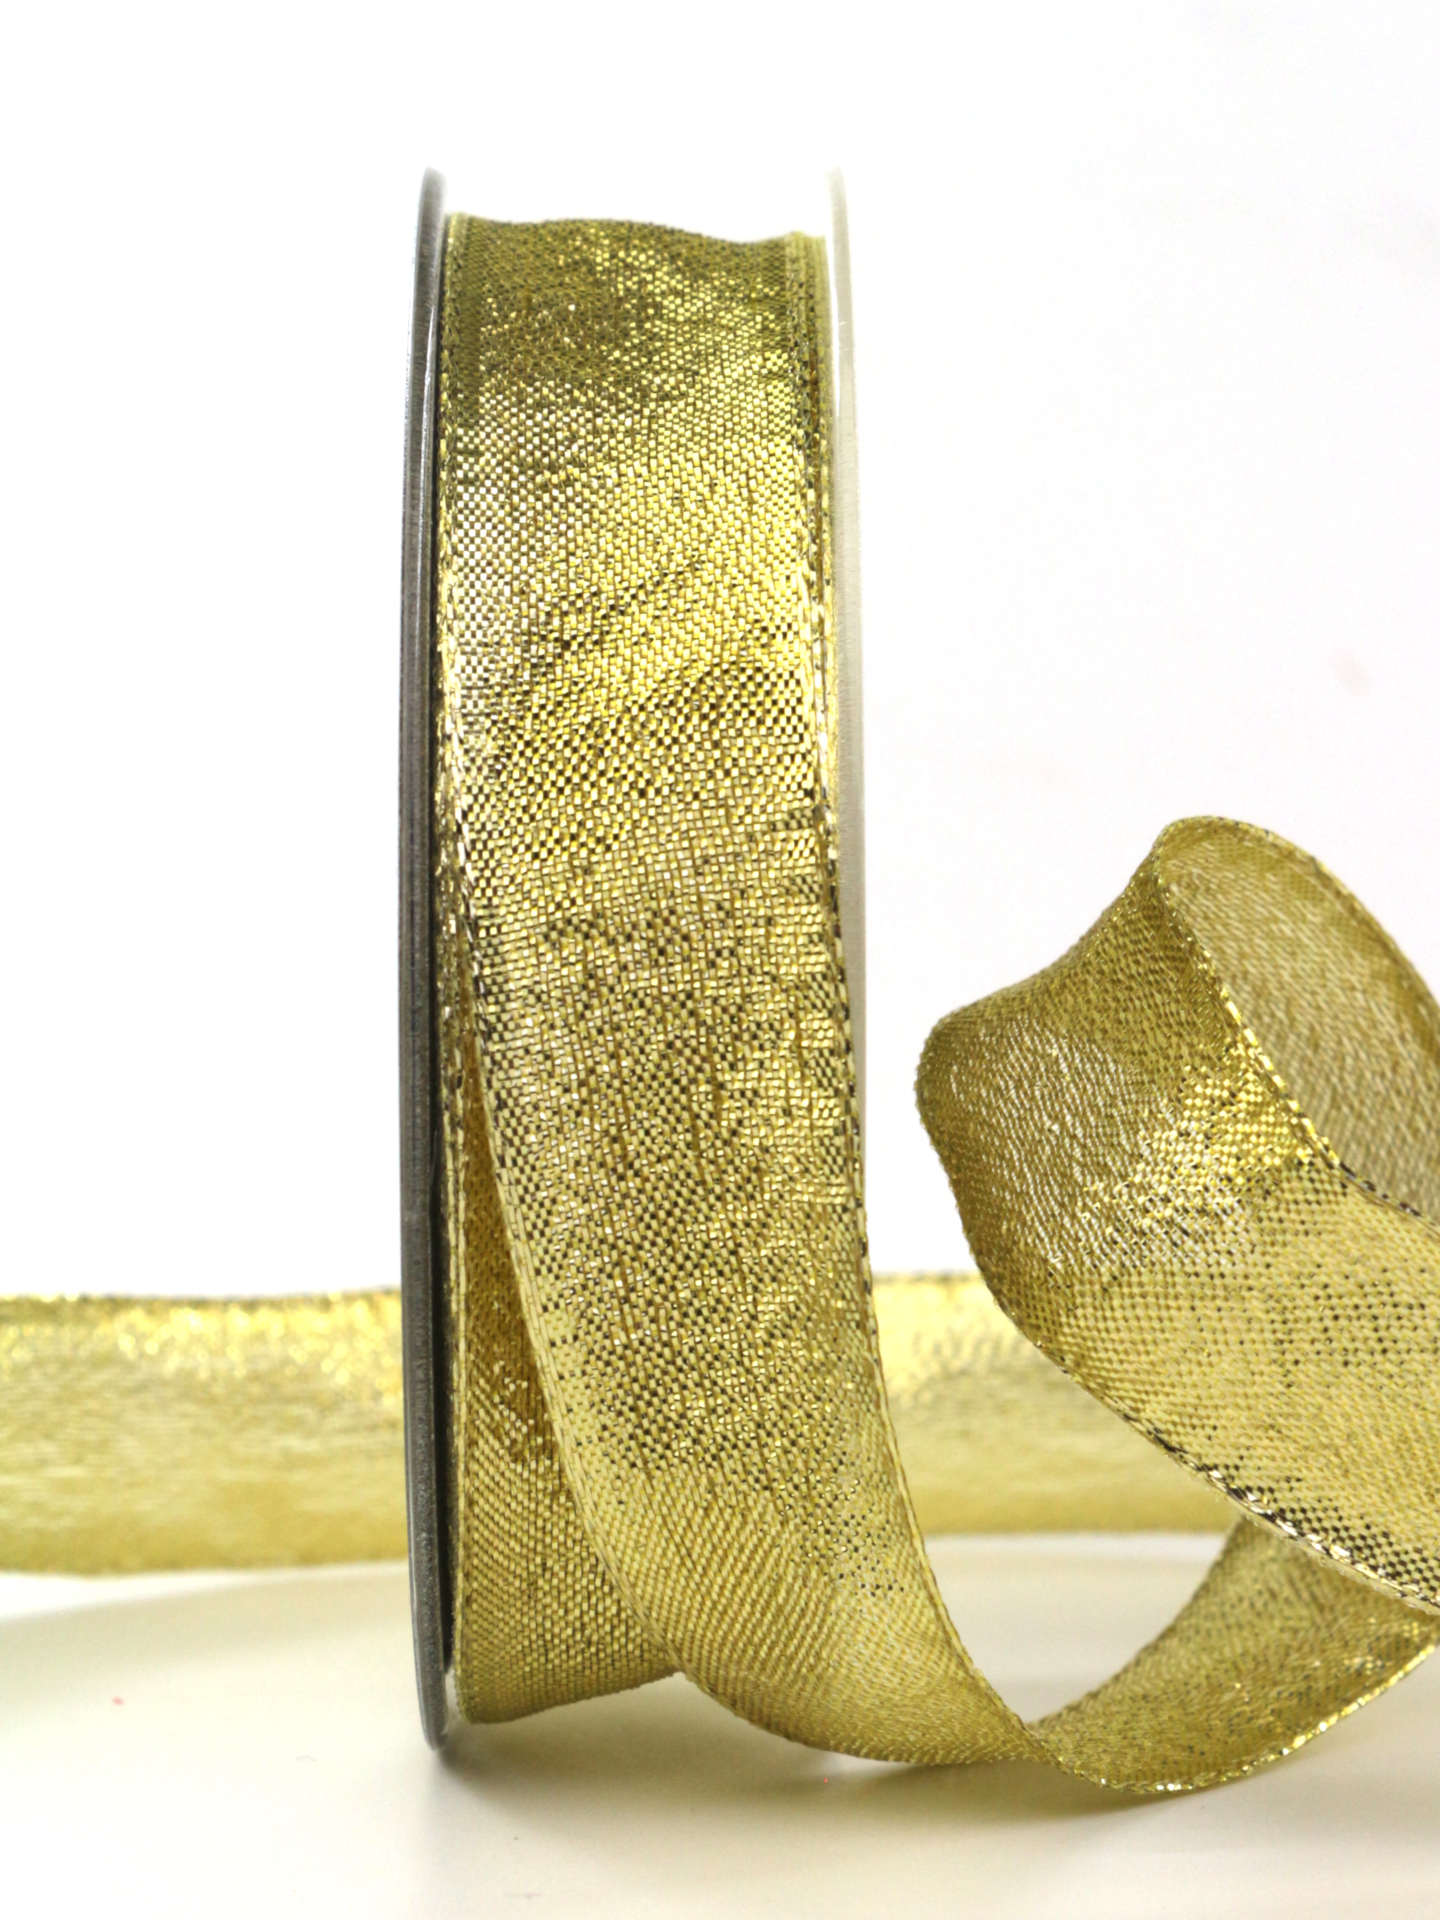 Goldband „Brokat“, gold, 25 mm breit, 25 m Rolle - geschenkband-weihnachten-dauersortiment, weihnachtsband, geschenkband-weihnachten, weihnachtsbaender